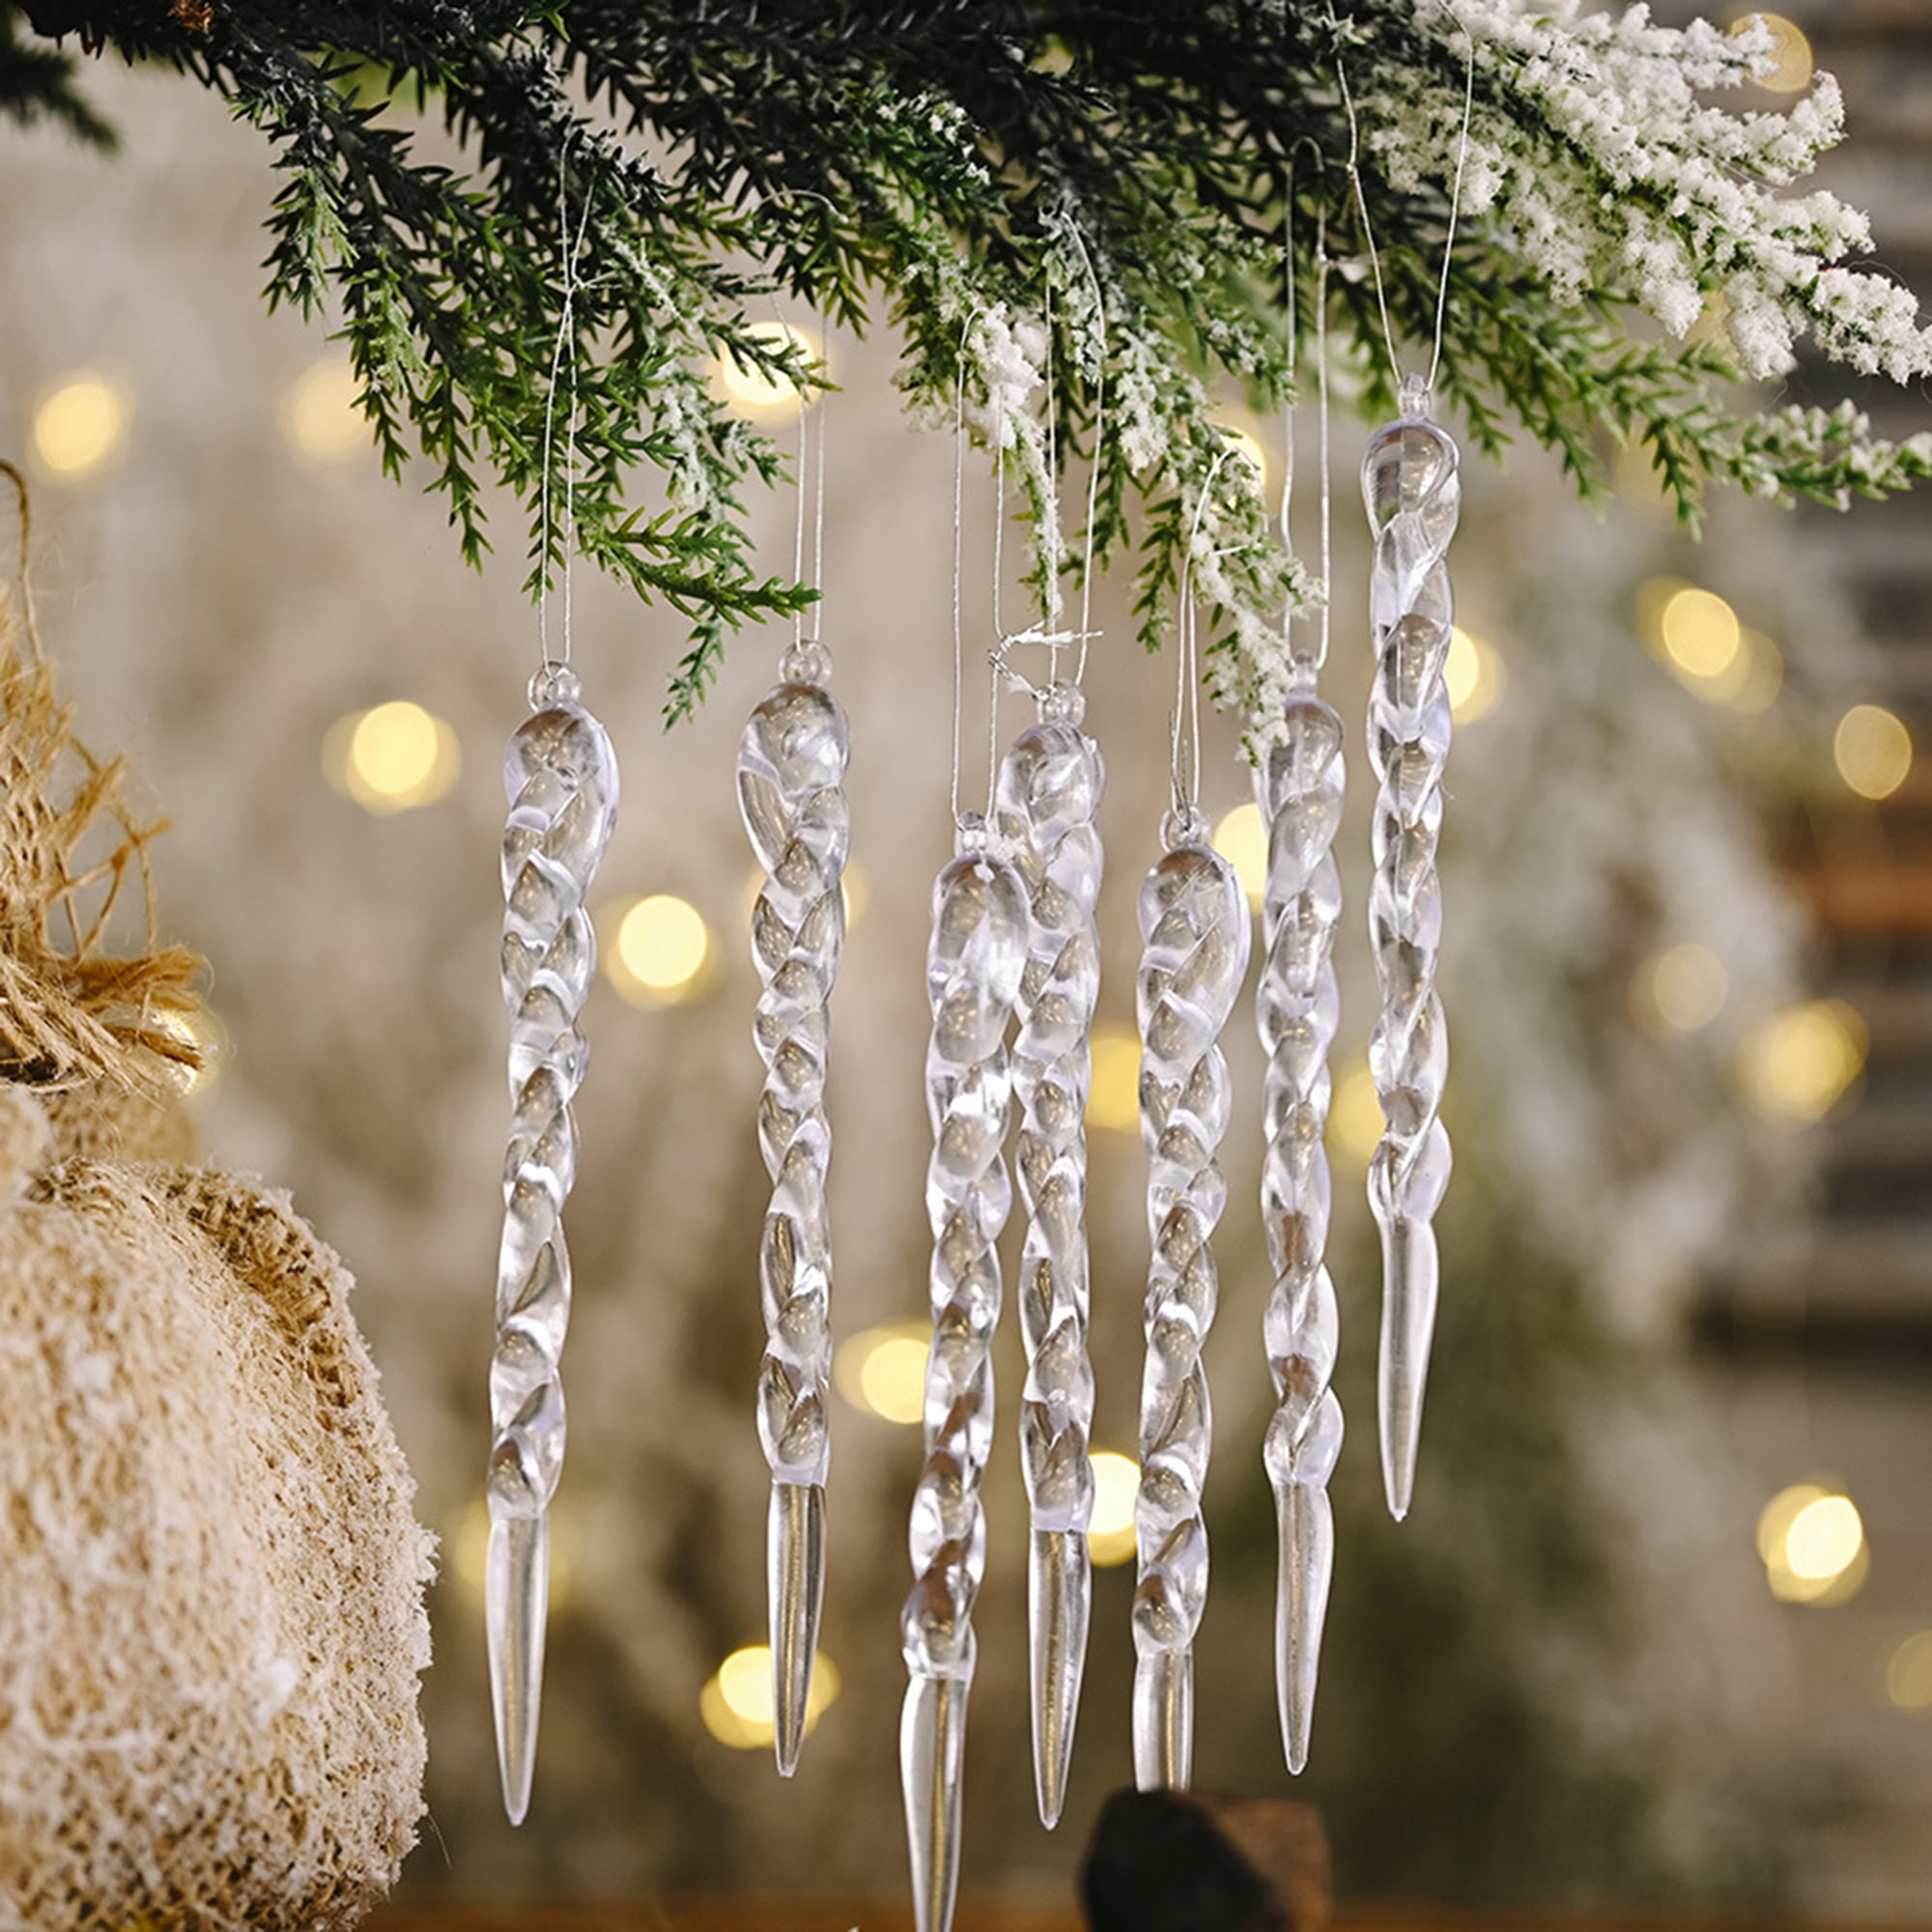 Details about   AG_ 6/12Pcs Plastic Icicle Ice Christmas Tree Pendant Ornament Party Decor Surpr 